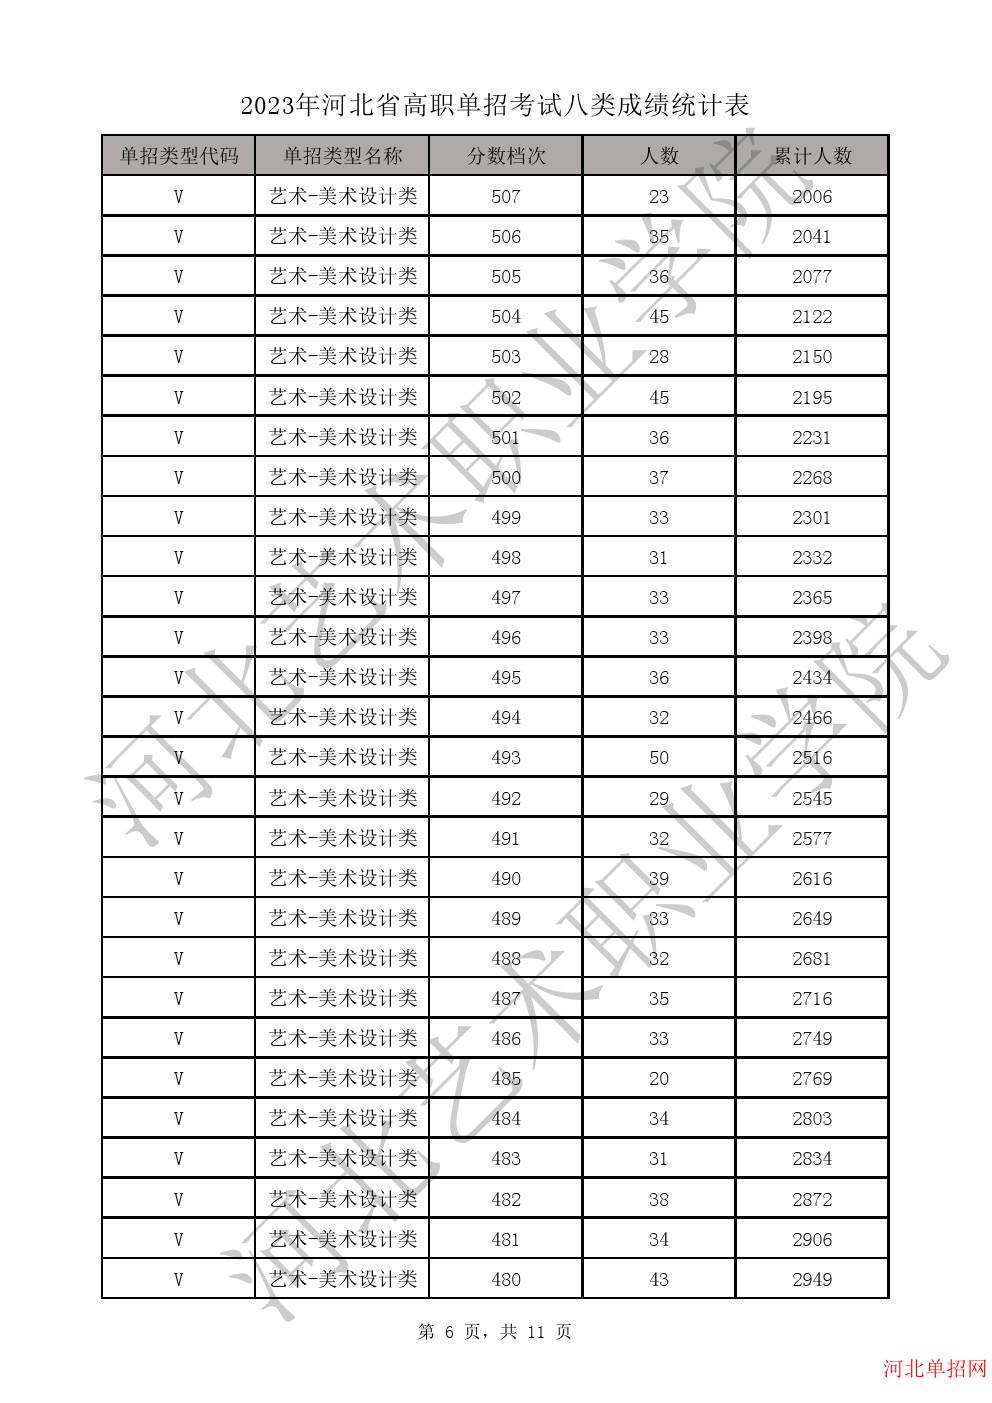 2023年河北省高职单招考试八类成绩统计表-V艺术-美术设计类一分一档表 图6